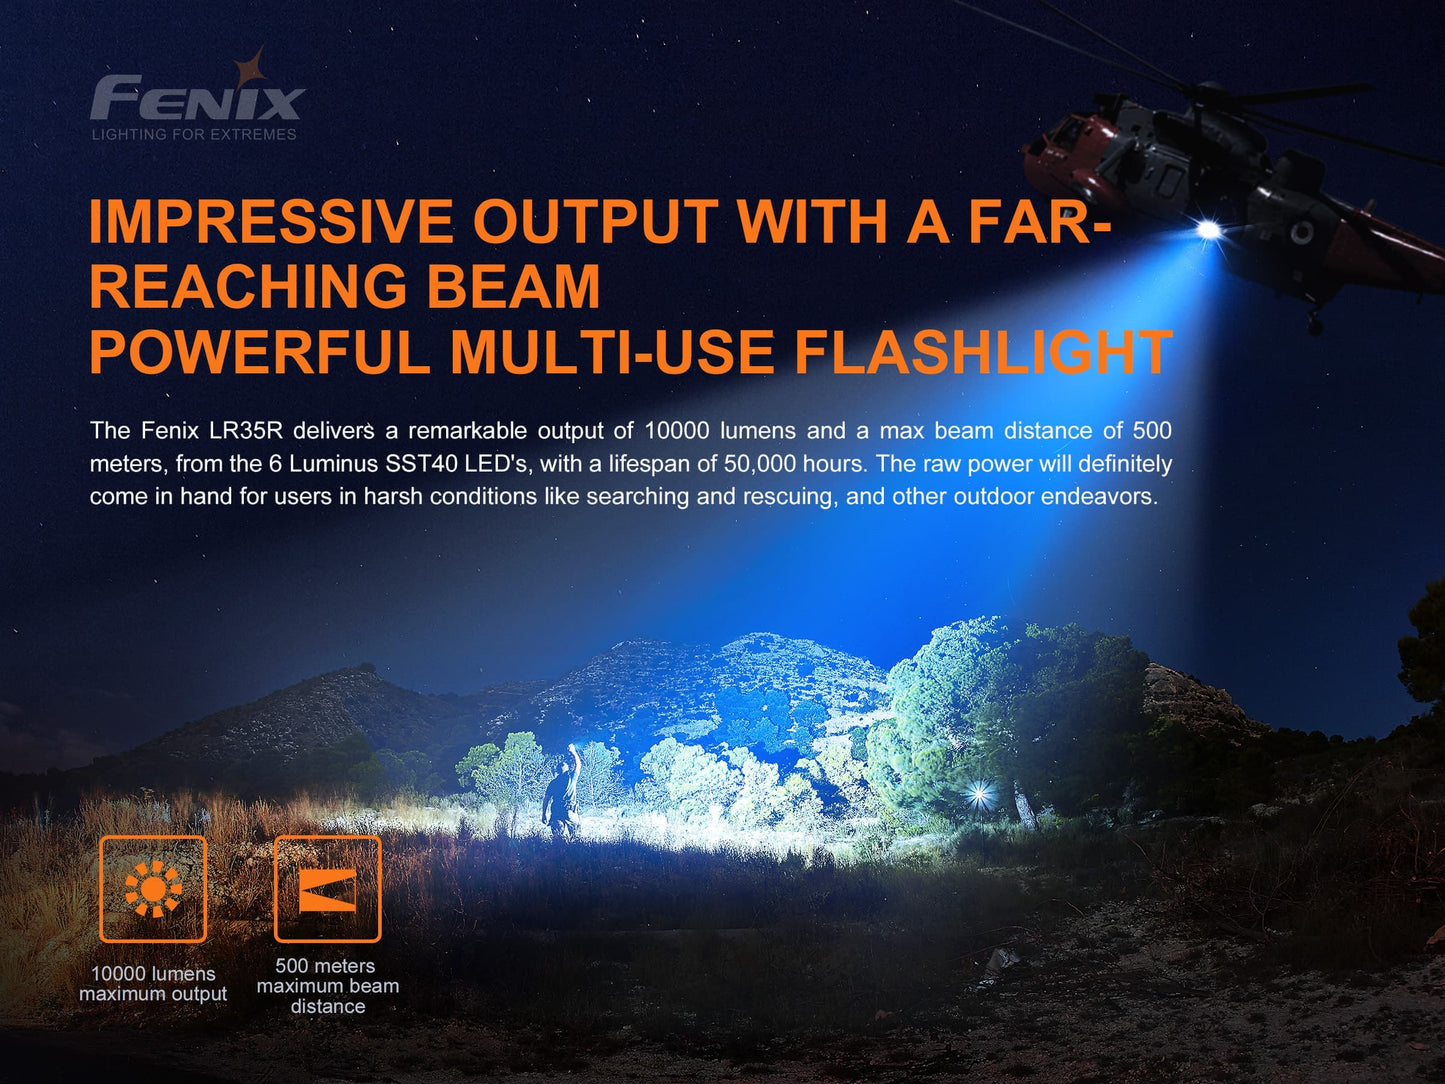 Fenix LR35R POWERFUL MID-SIZE SEARCHING FLASHLIGHT